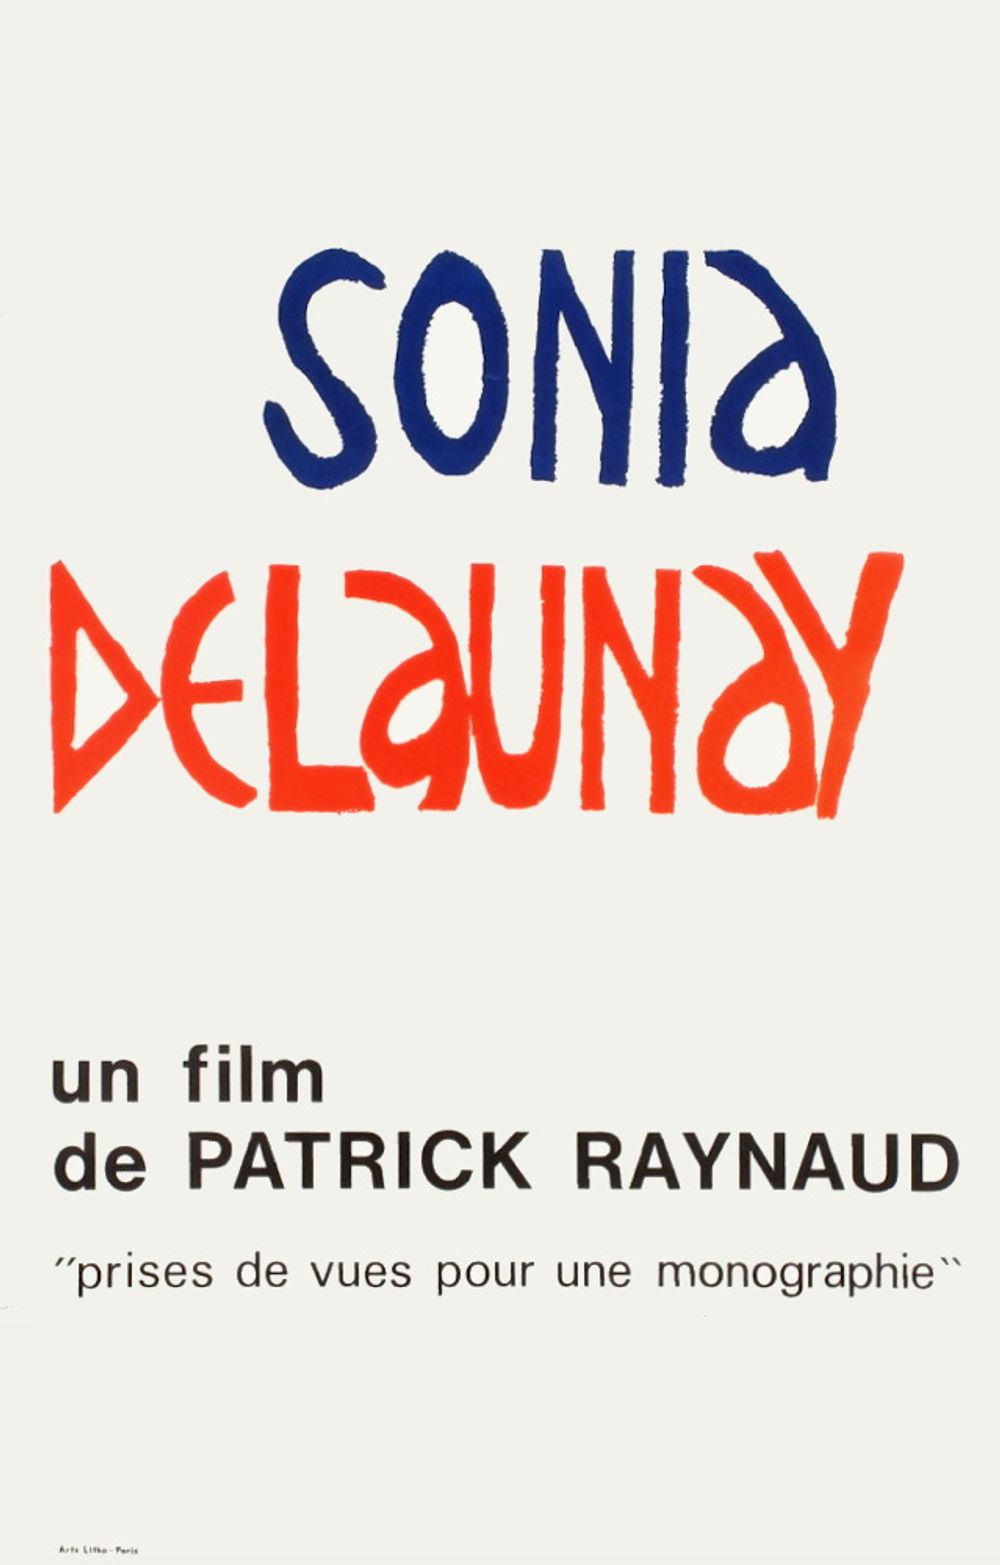 Sonia Delaunay film de Patrick Raynaud